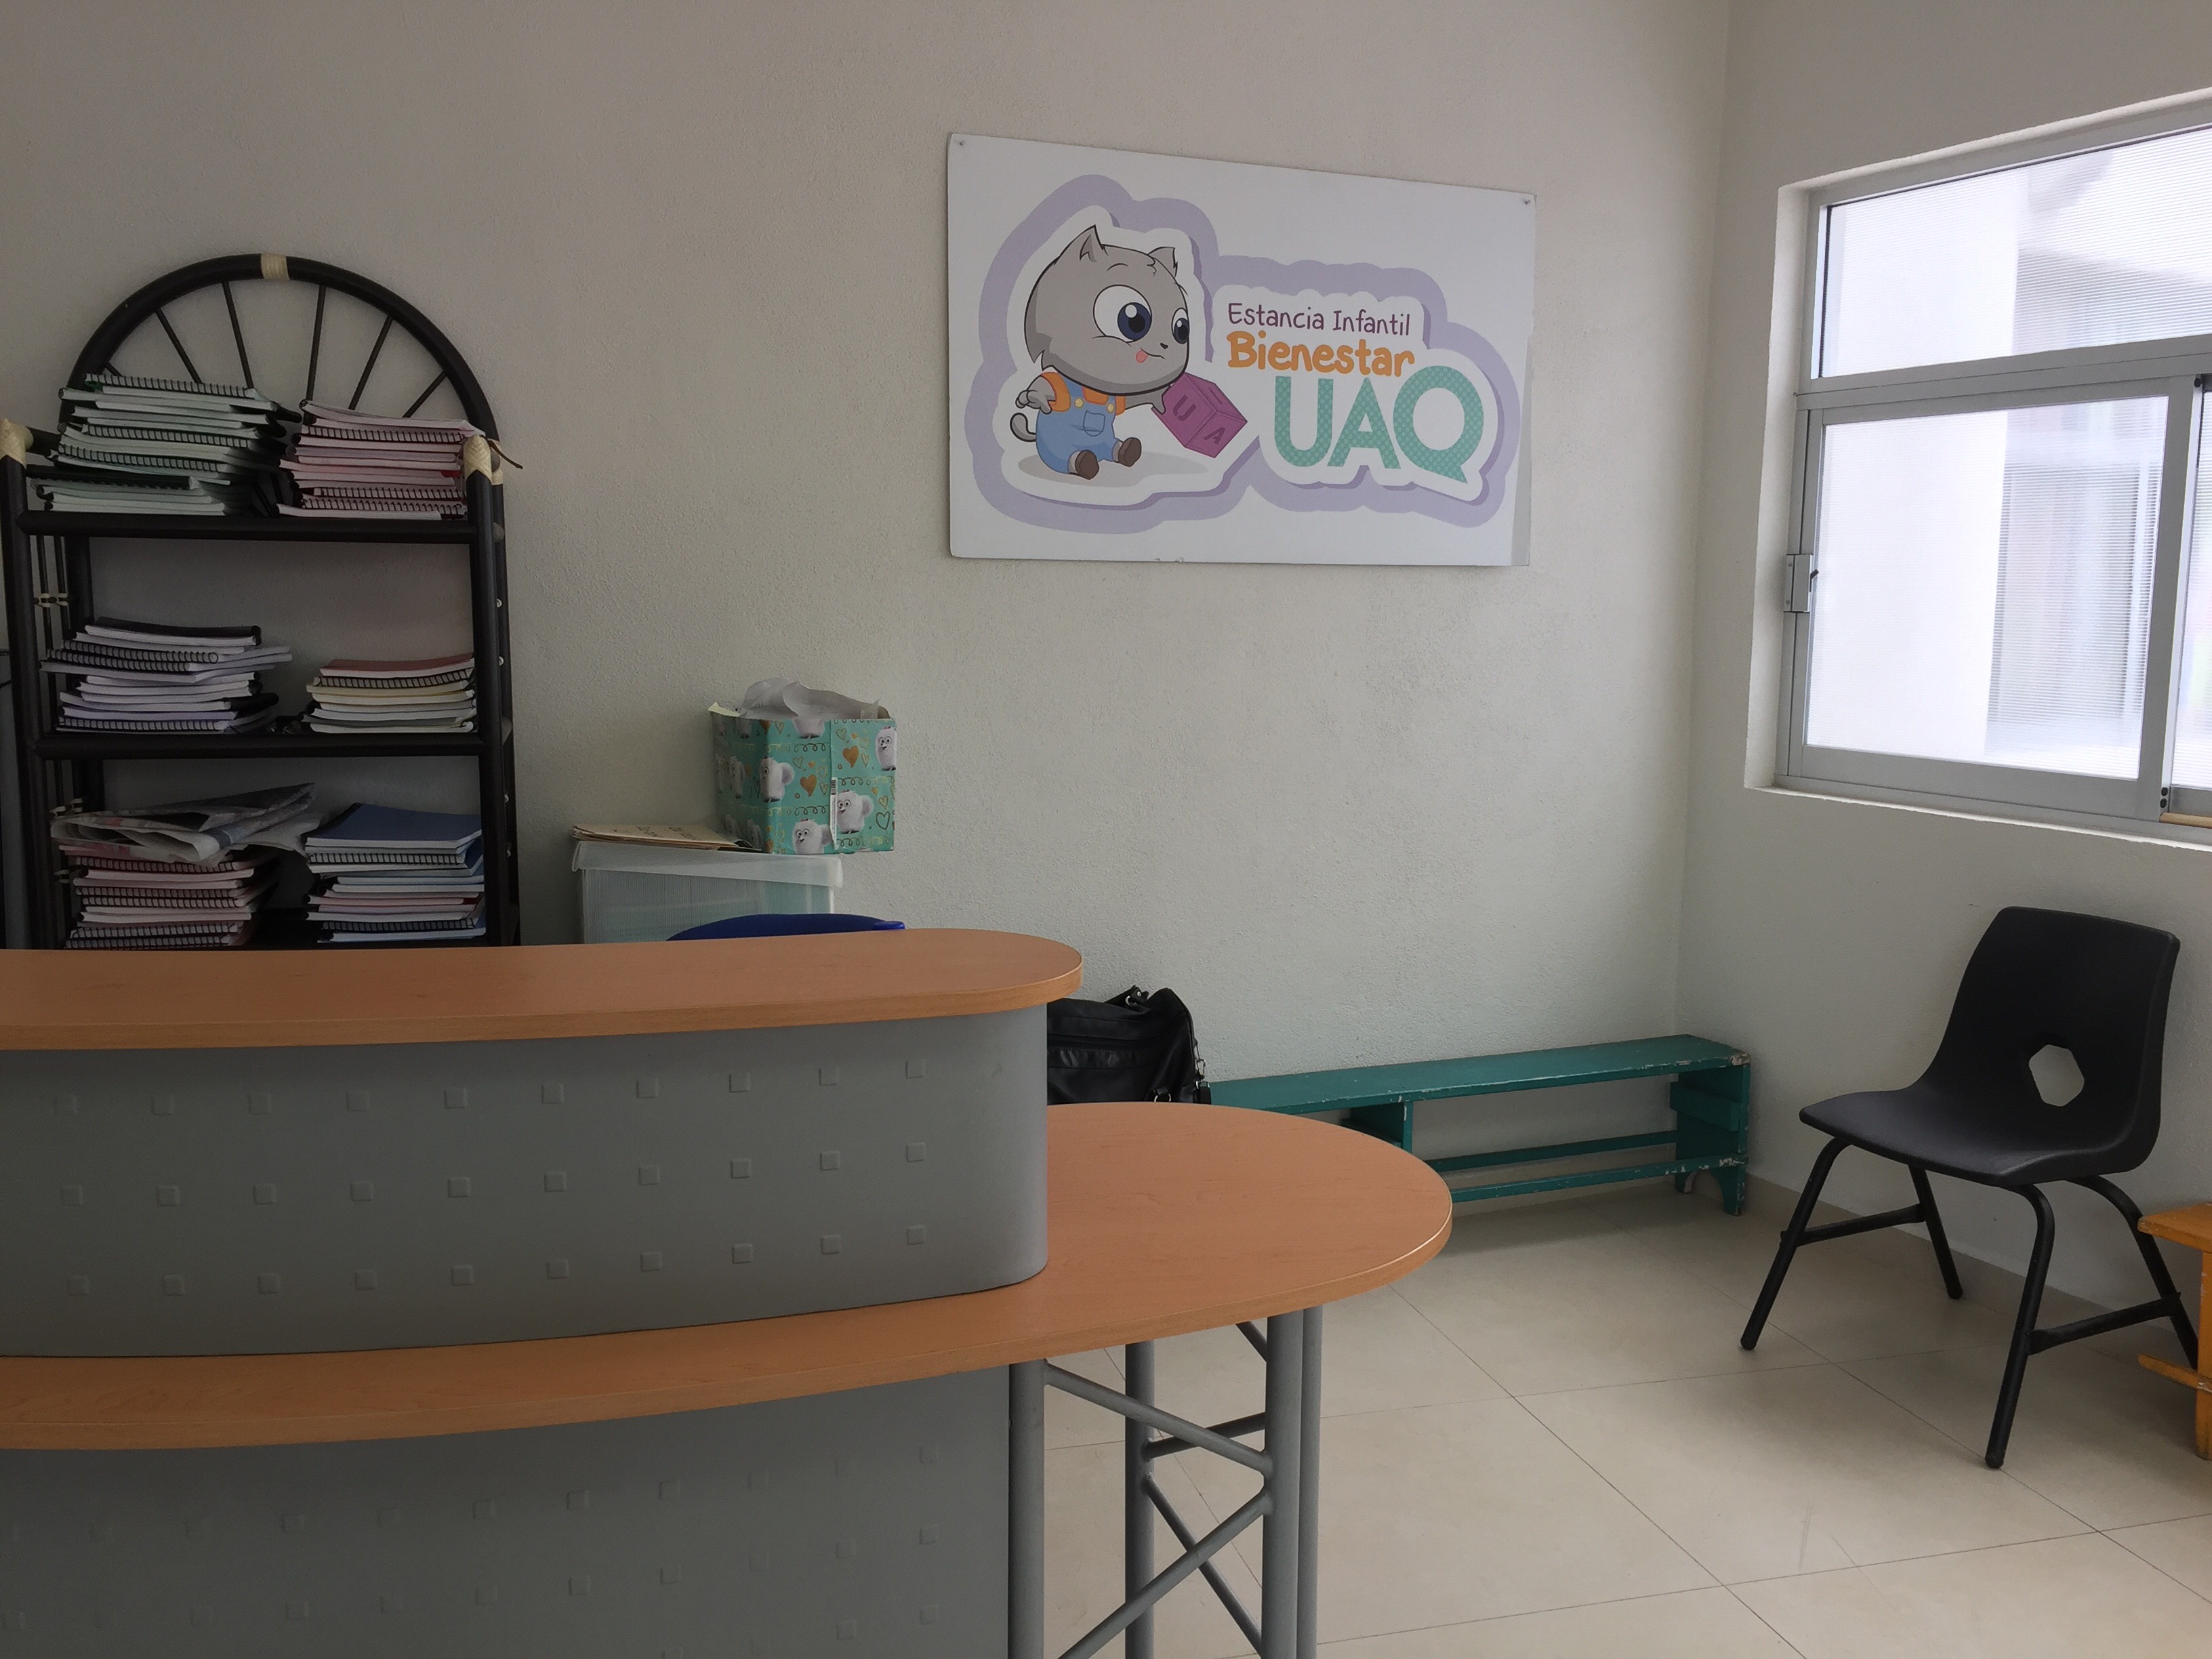  Estancia infantil de la UAQ abre nuevas instalaciones